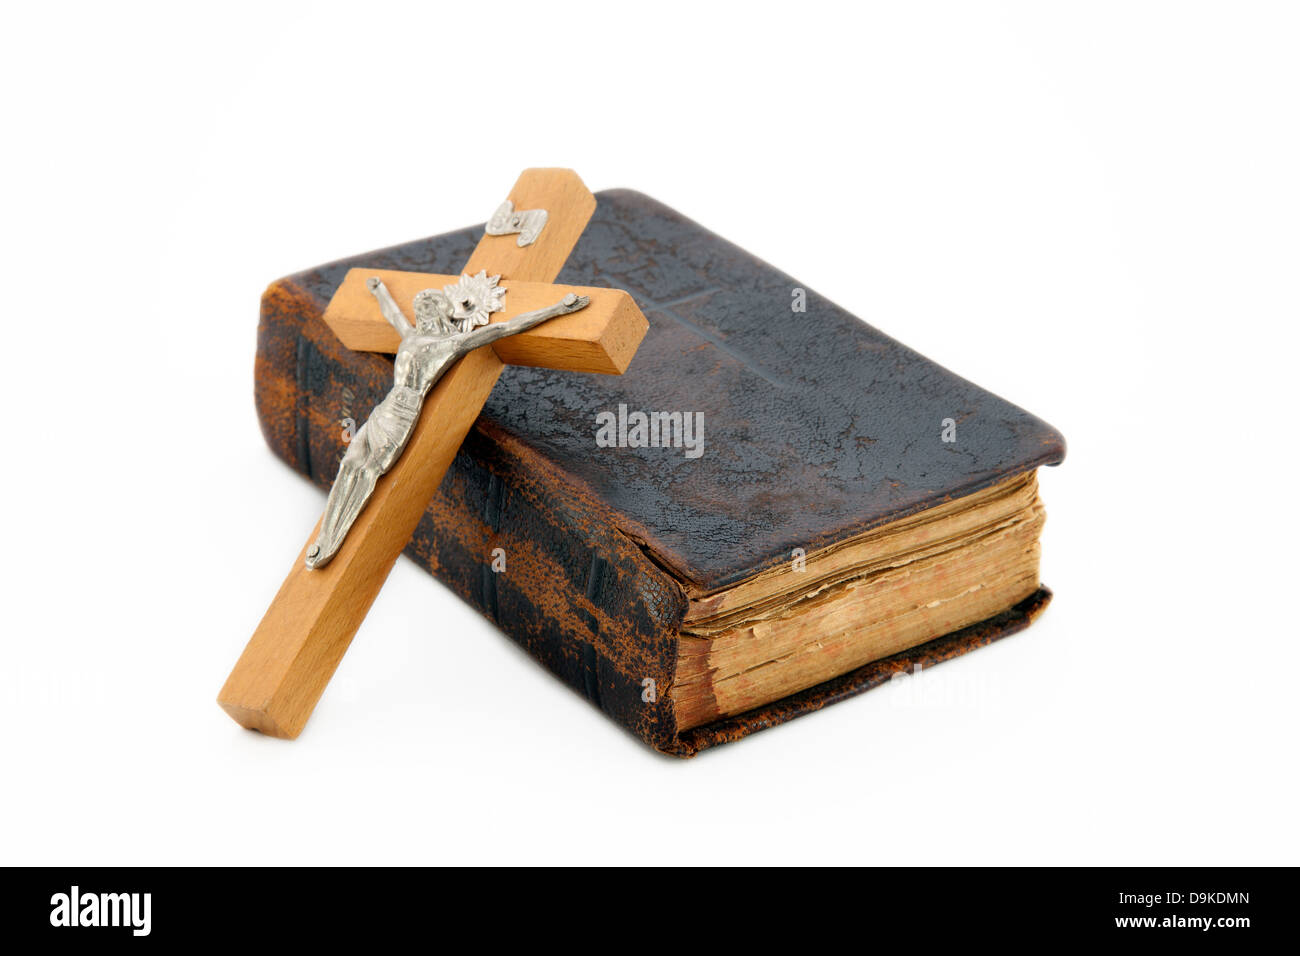 Santo bibile con crocifisso Foto Stock